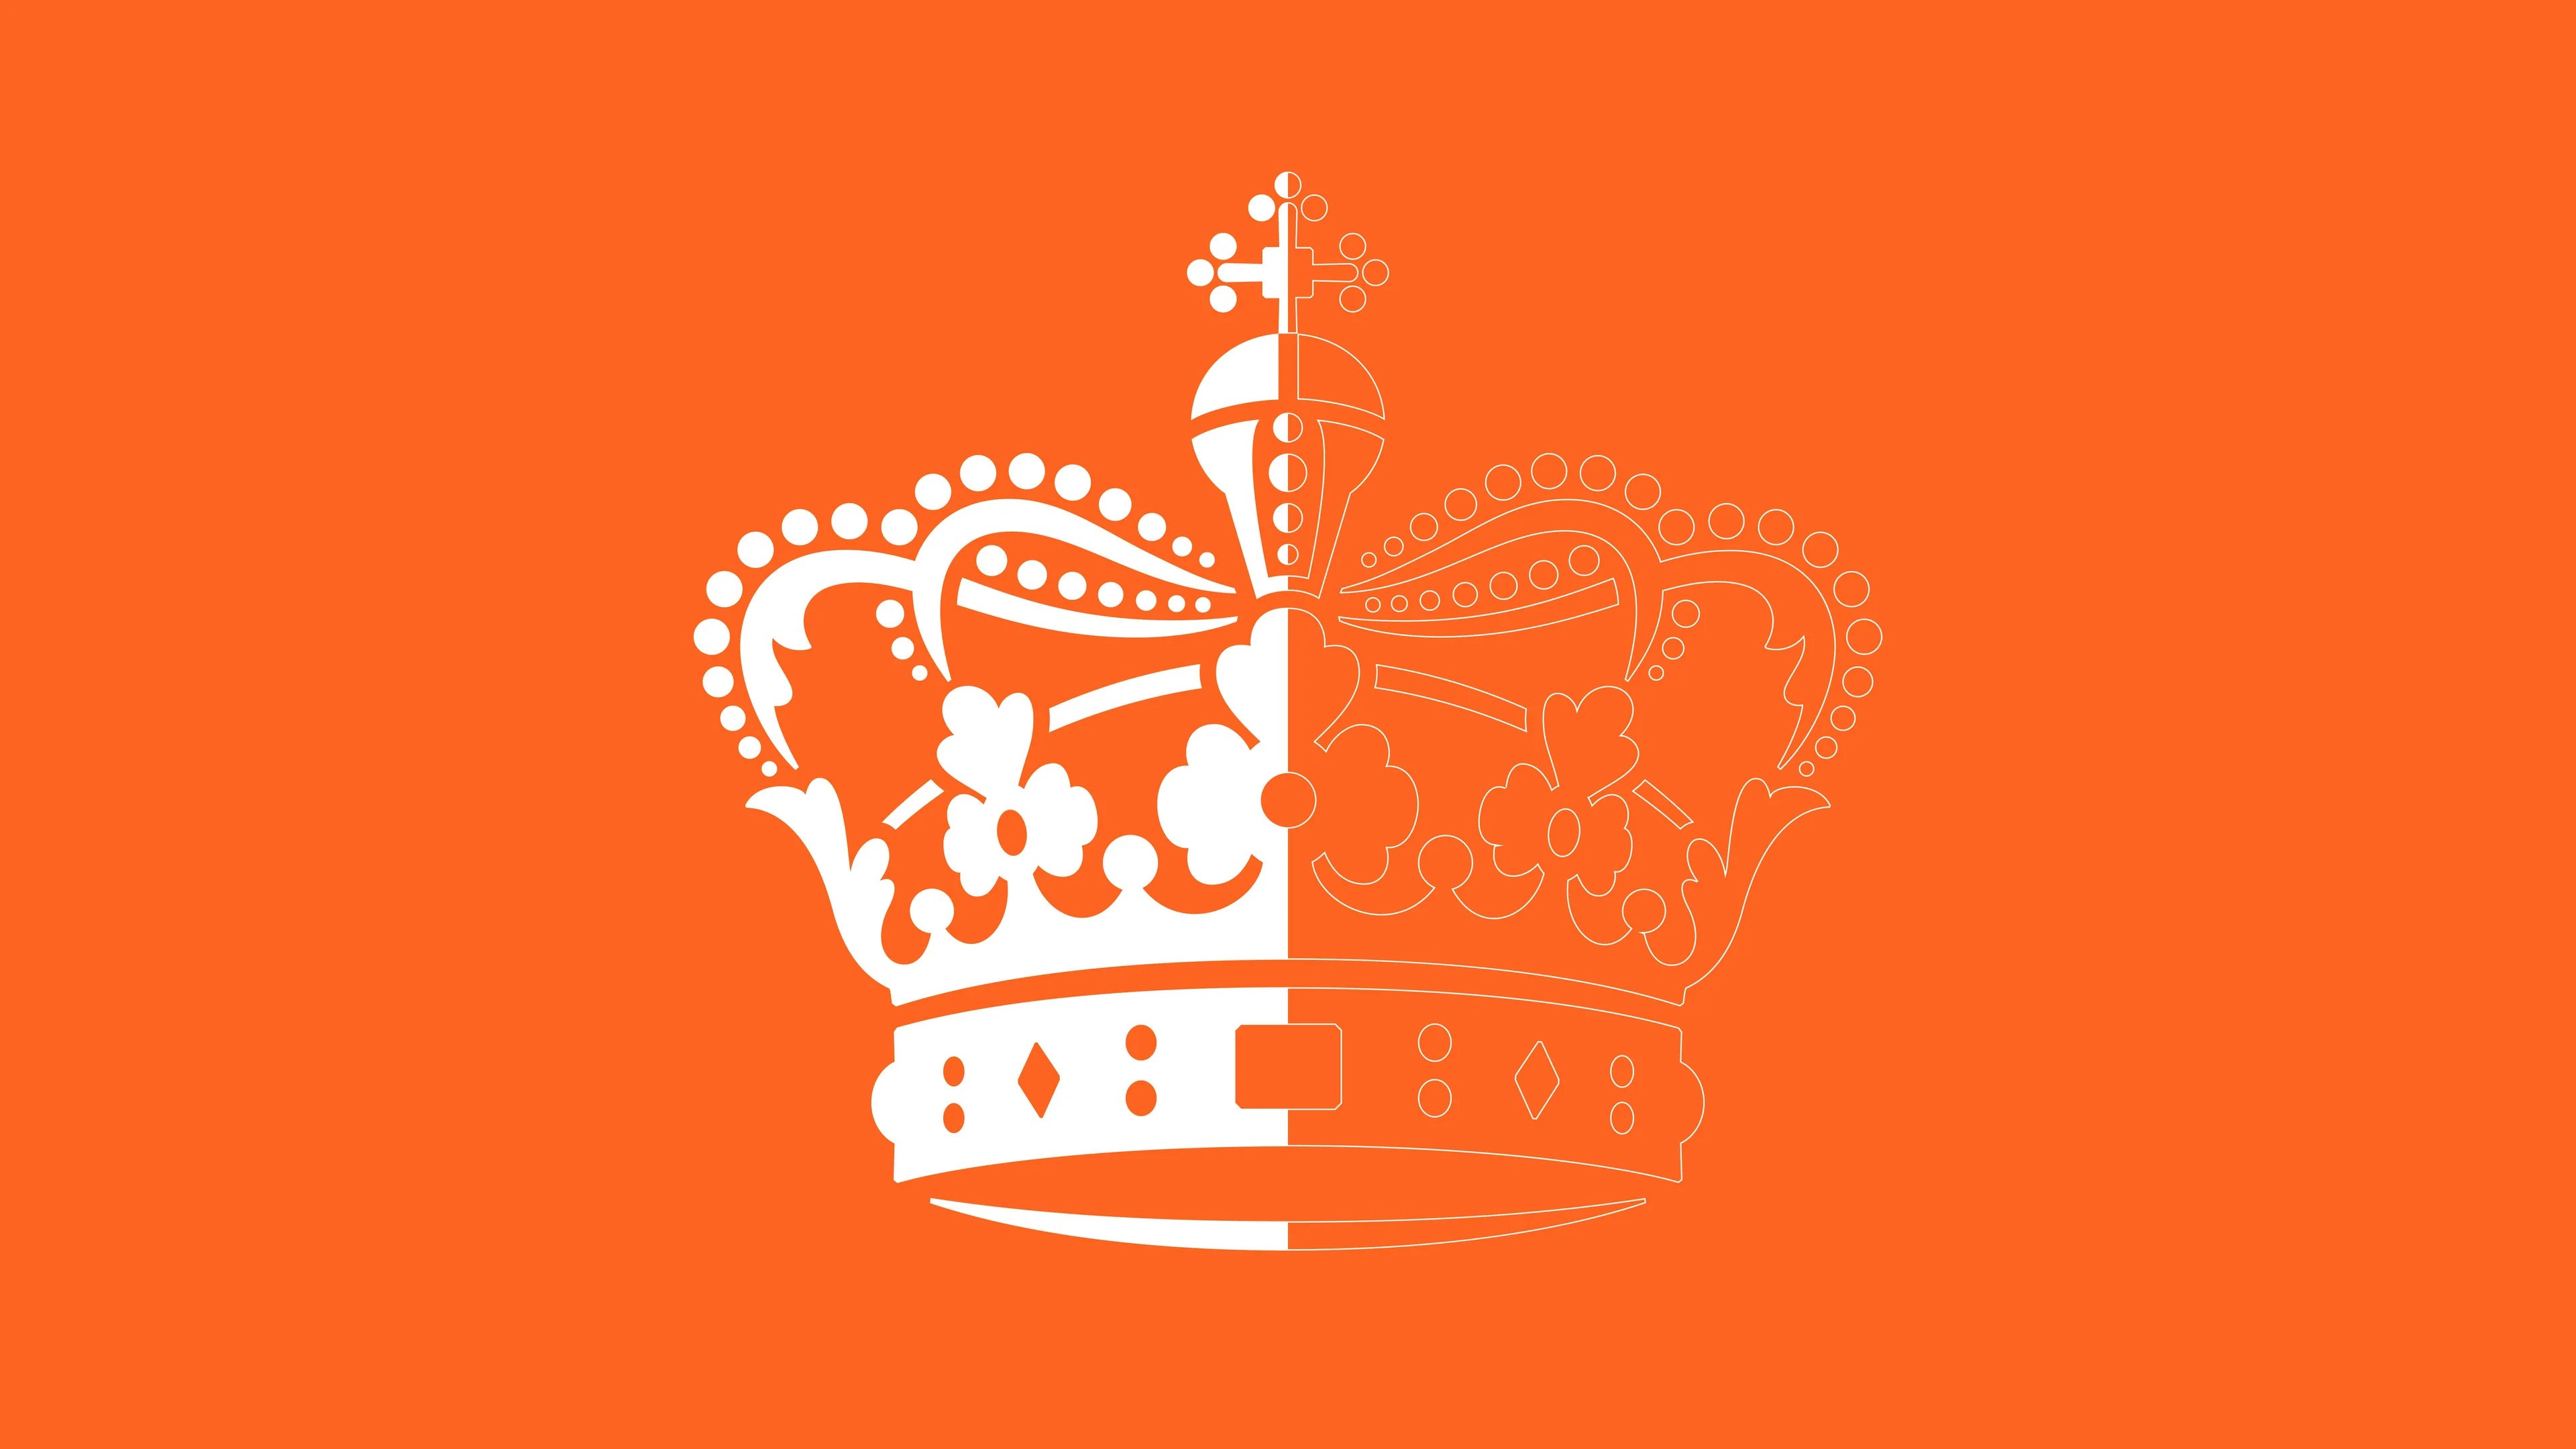 Her Majesty Queen Margrethe II of Denmark’s Jubilee Logo by Kontrapunkt